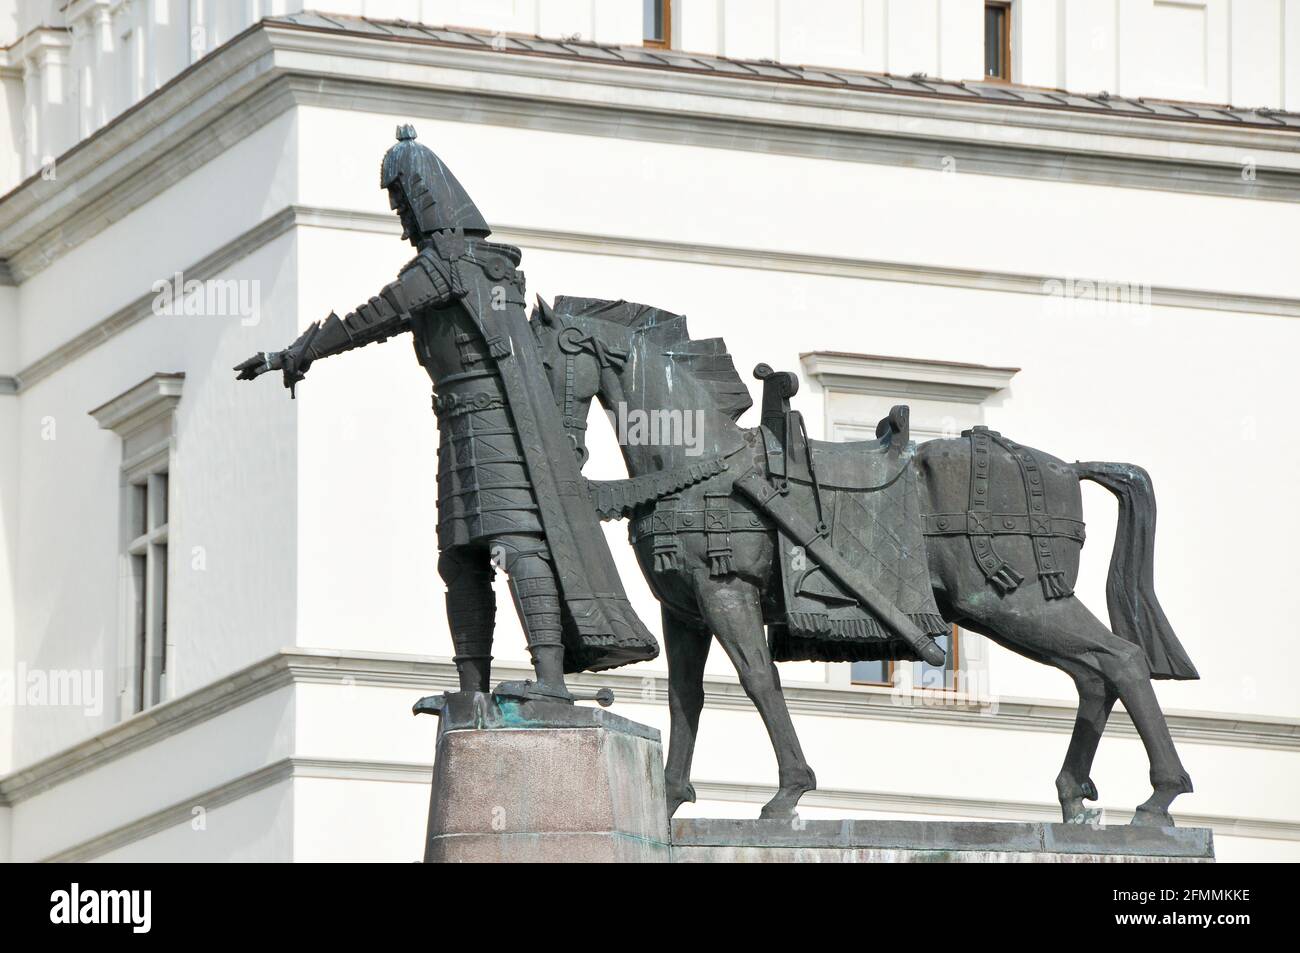 Gediminas monumento equestre sulla Piazza della Cattedrale di Vilnius, Lituania. 19 Settembre 2009 © Wojciech Strozyk / Alamy Stock Foto Foto Stock